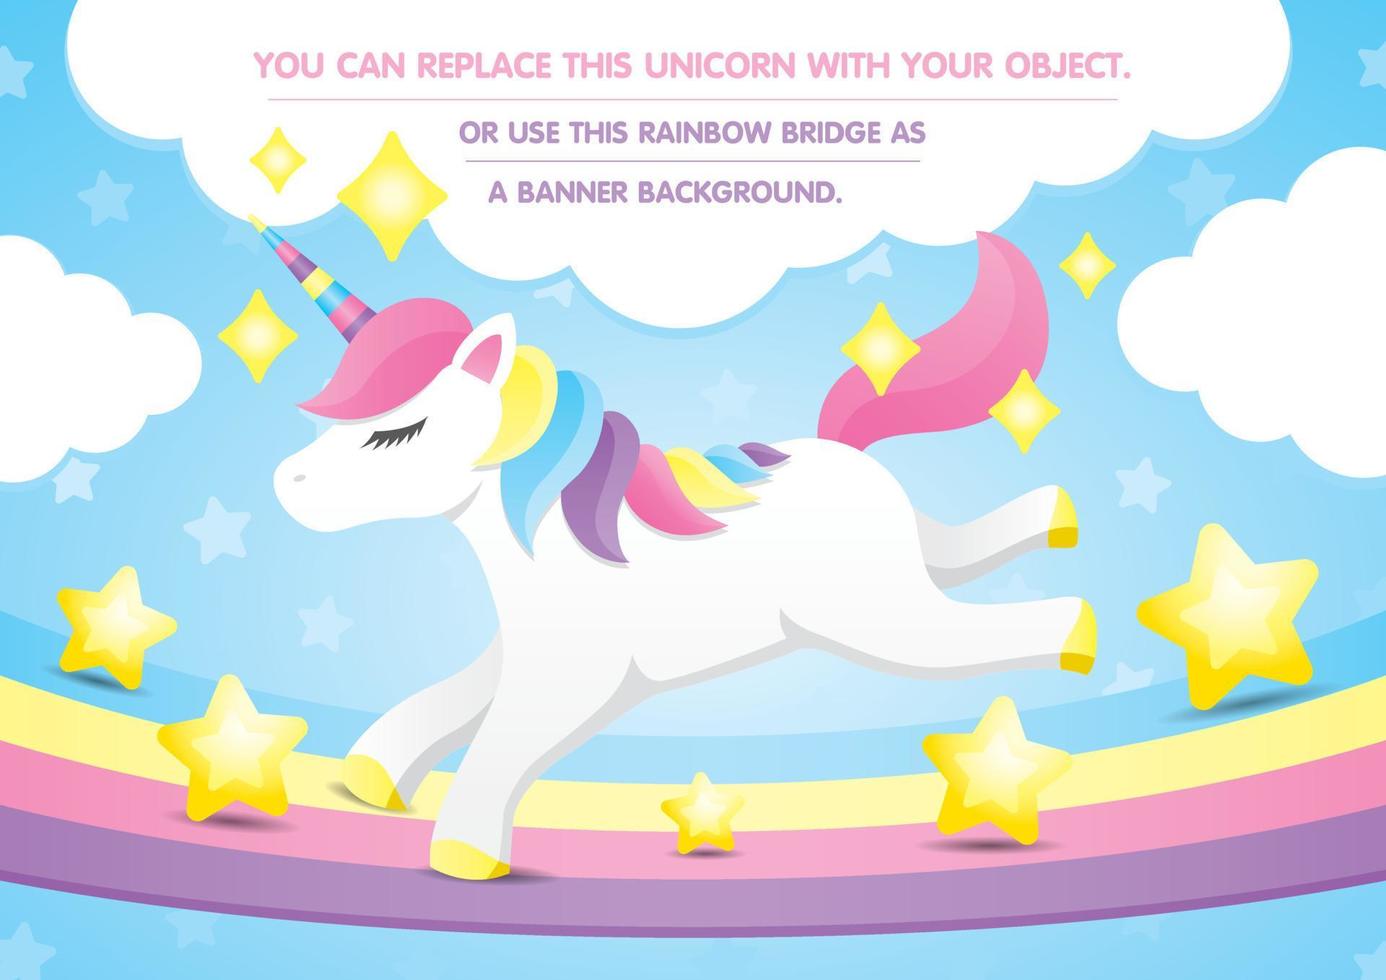 lindo unicornio está corriendo en el puente del arco iris pastel con hermosas estrellas en el cielo azul feliz y nubes con espacio de copia. puedes reemplazar este unicornio con tu objeto. vector